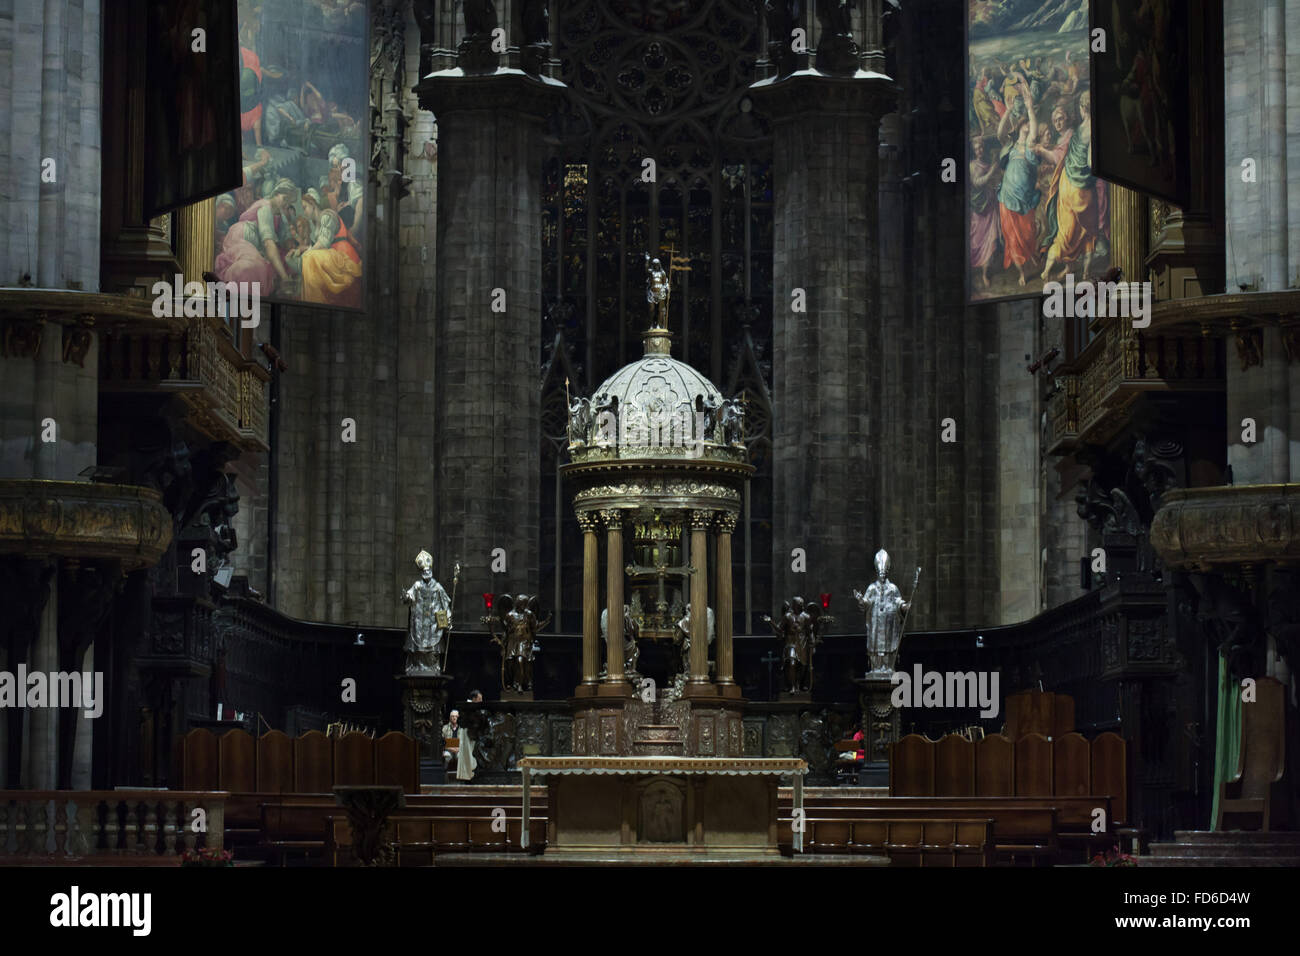 Ciborium designed by Italian mannerist architect Pellegrino Tibaldi for the presbytery of the Milan Cathedral (Duomo di Milano) in Milan, Lombardy, Italy. Quadroni di San Carlo are seen above. Stock Photo